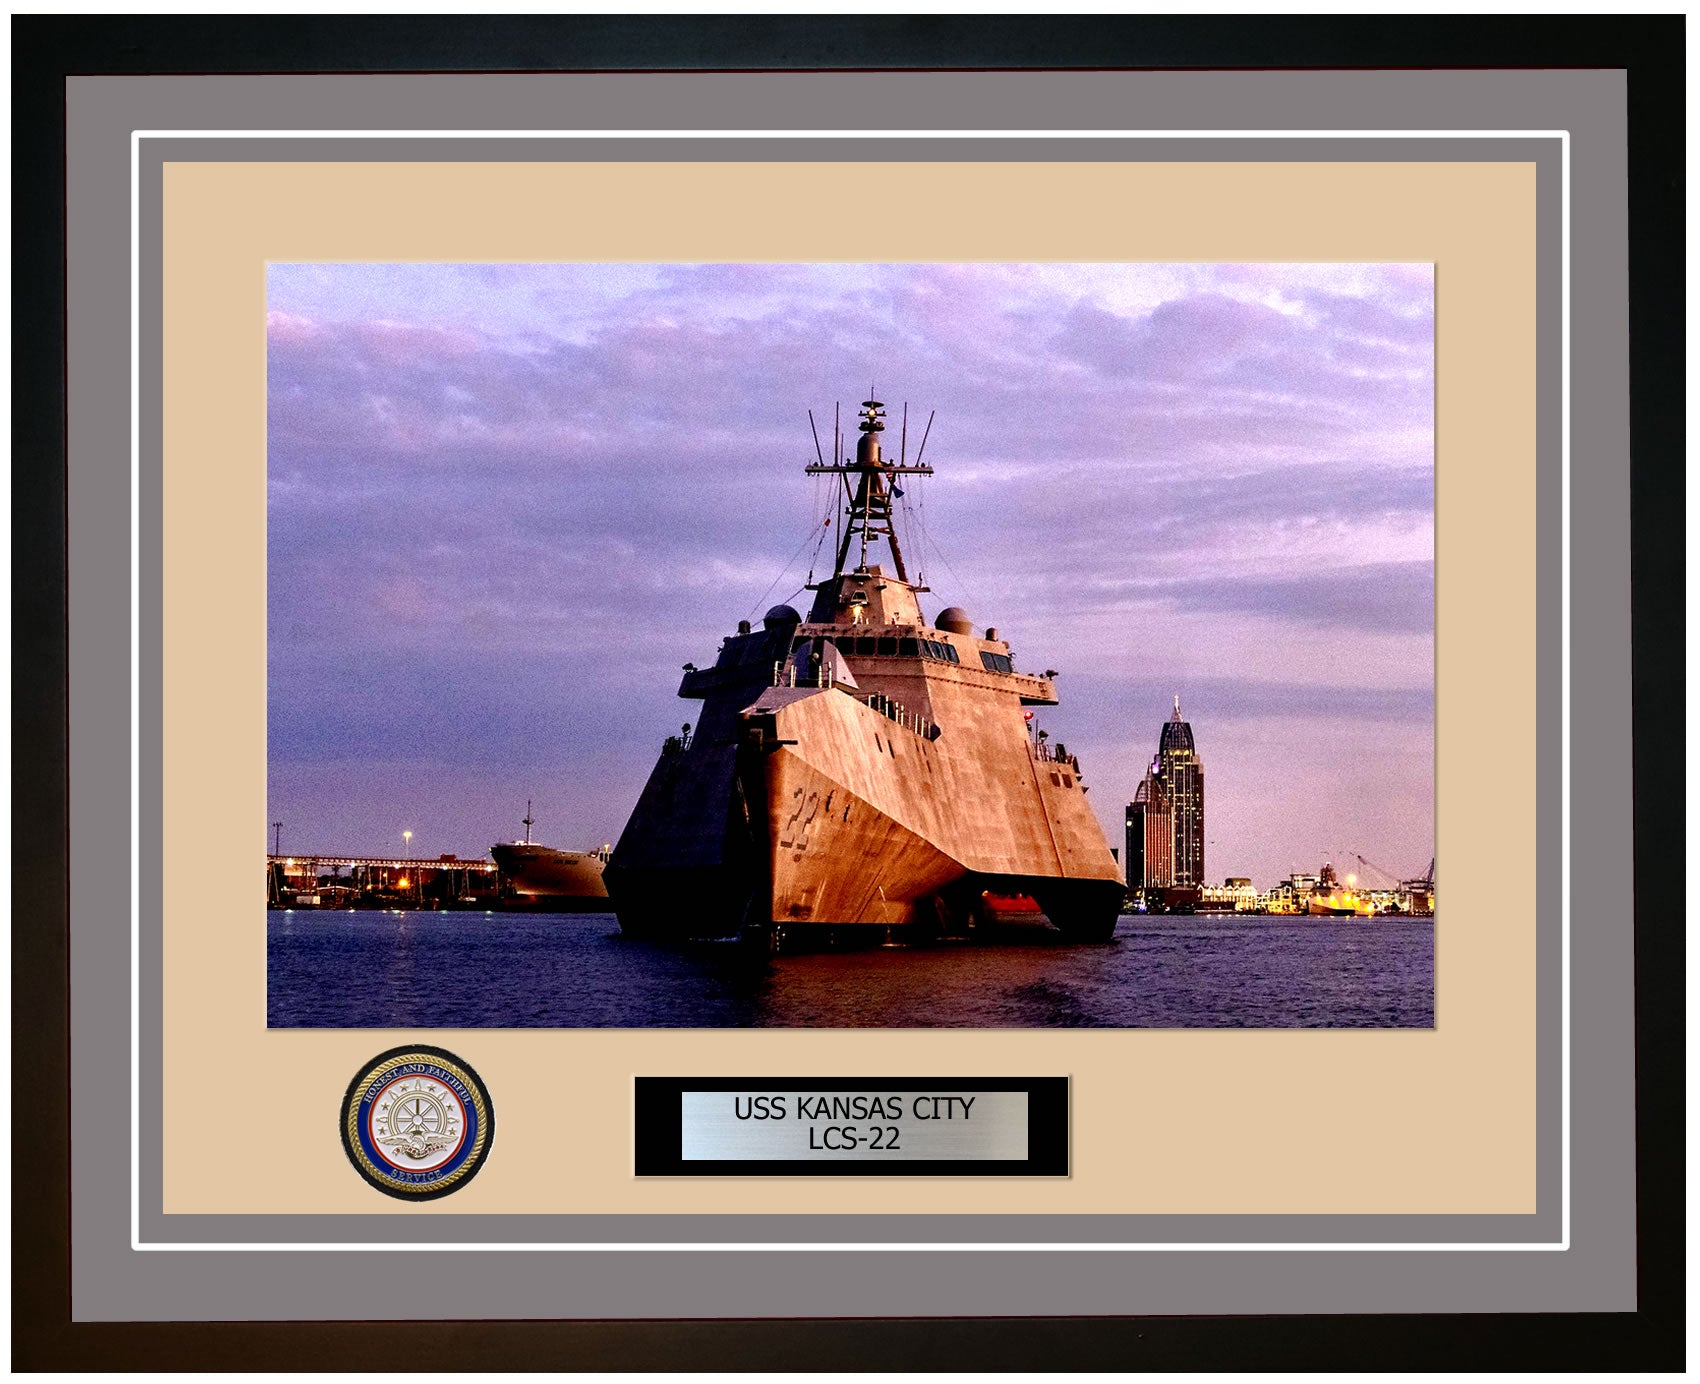 USS Kansas City LCS-22 Framed Navy Ship Photo Grey